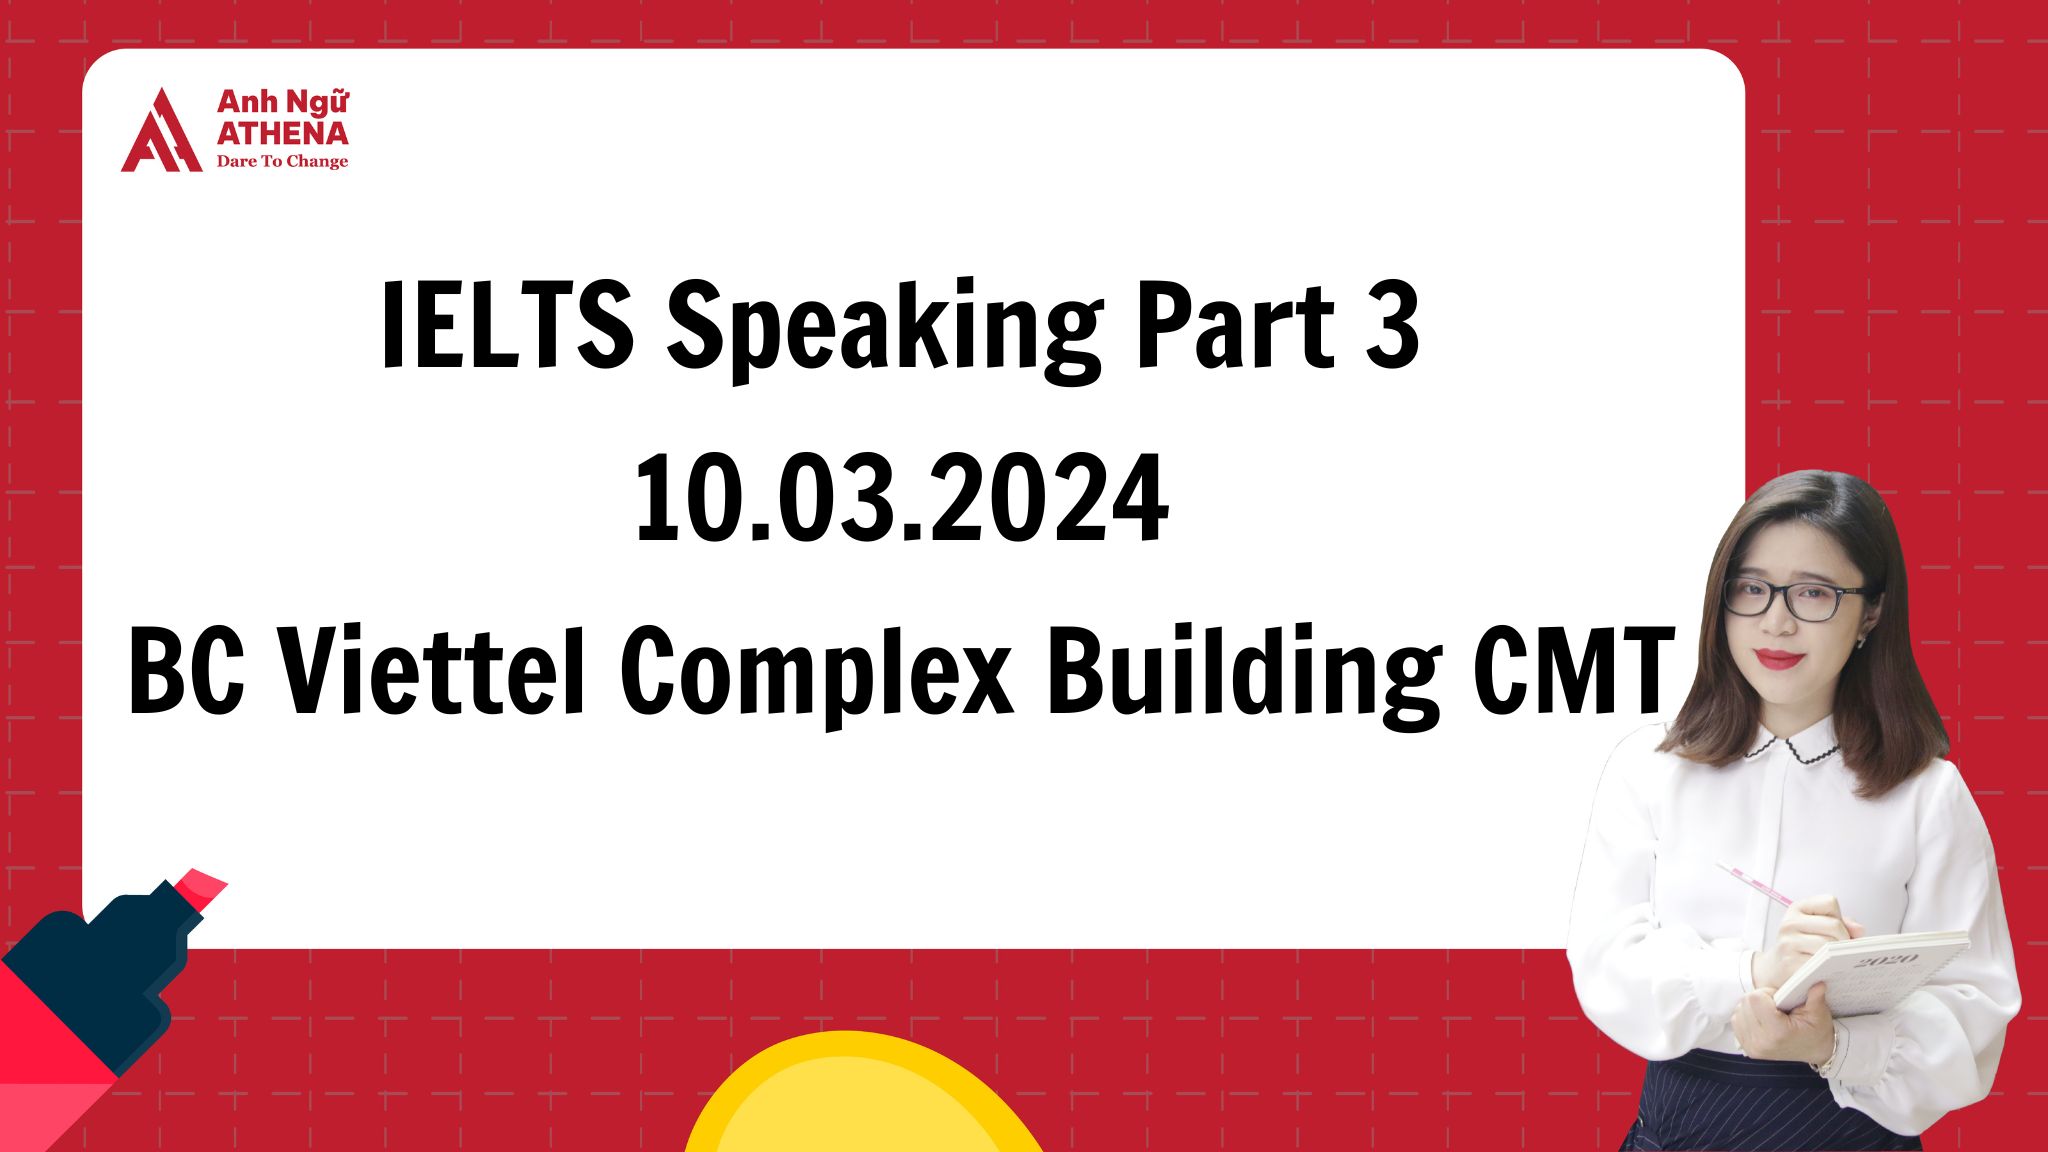 Giải đề chi tiết IELTS Speaking Part 3 - 10.03.2024 tại BC Viettel Complex Building CMT